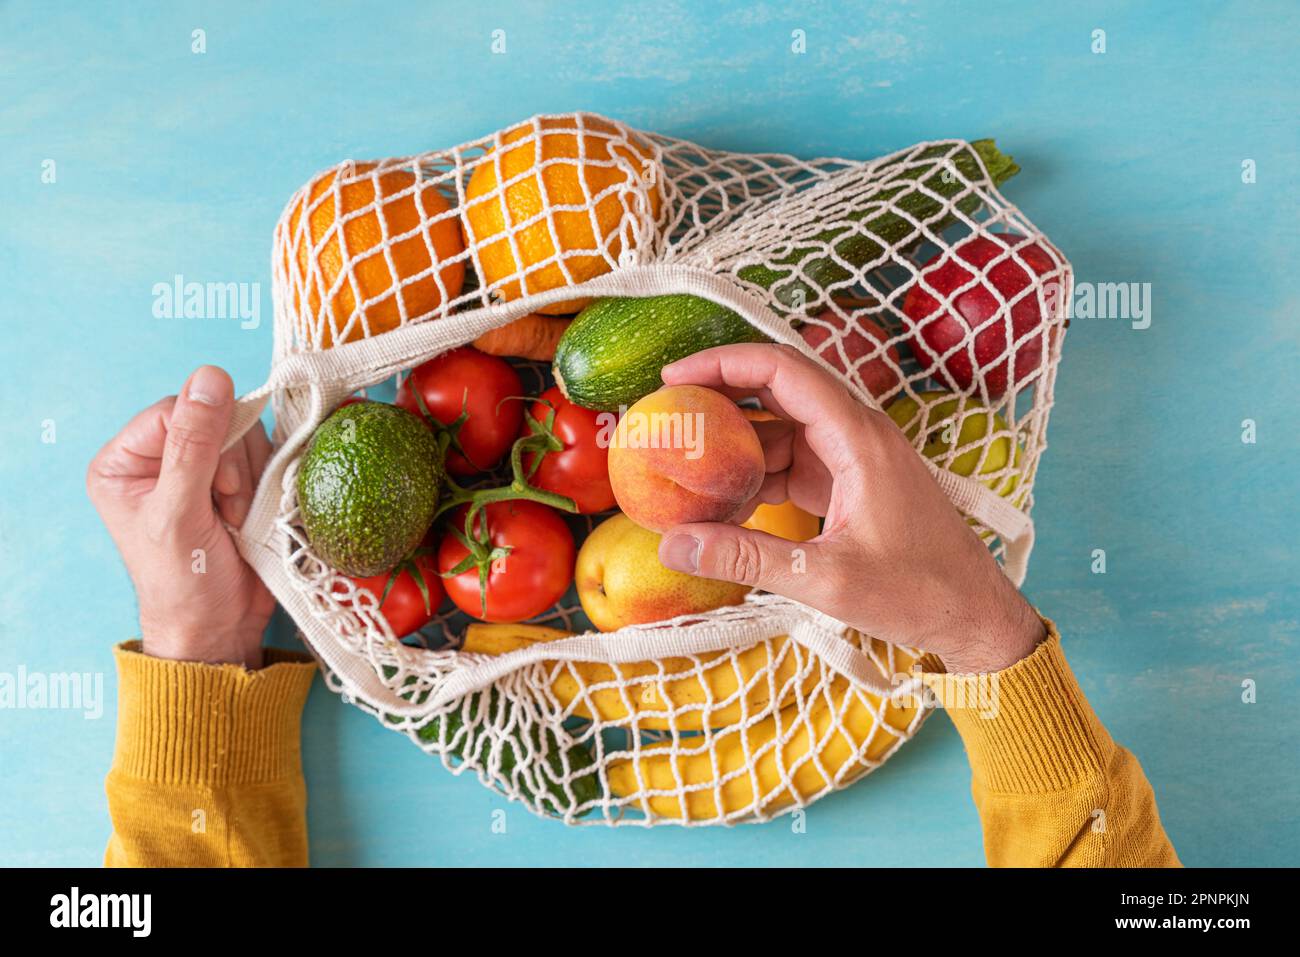 Homme poignet prenant des fruits de pêche du sac de shopping de filet avec des fruits et des légumes. Magasins écologiques. Style de vie durable, zéro déchet, sans plastique Banque D'Images